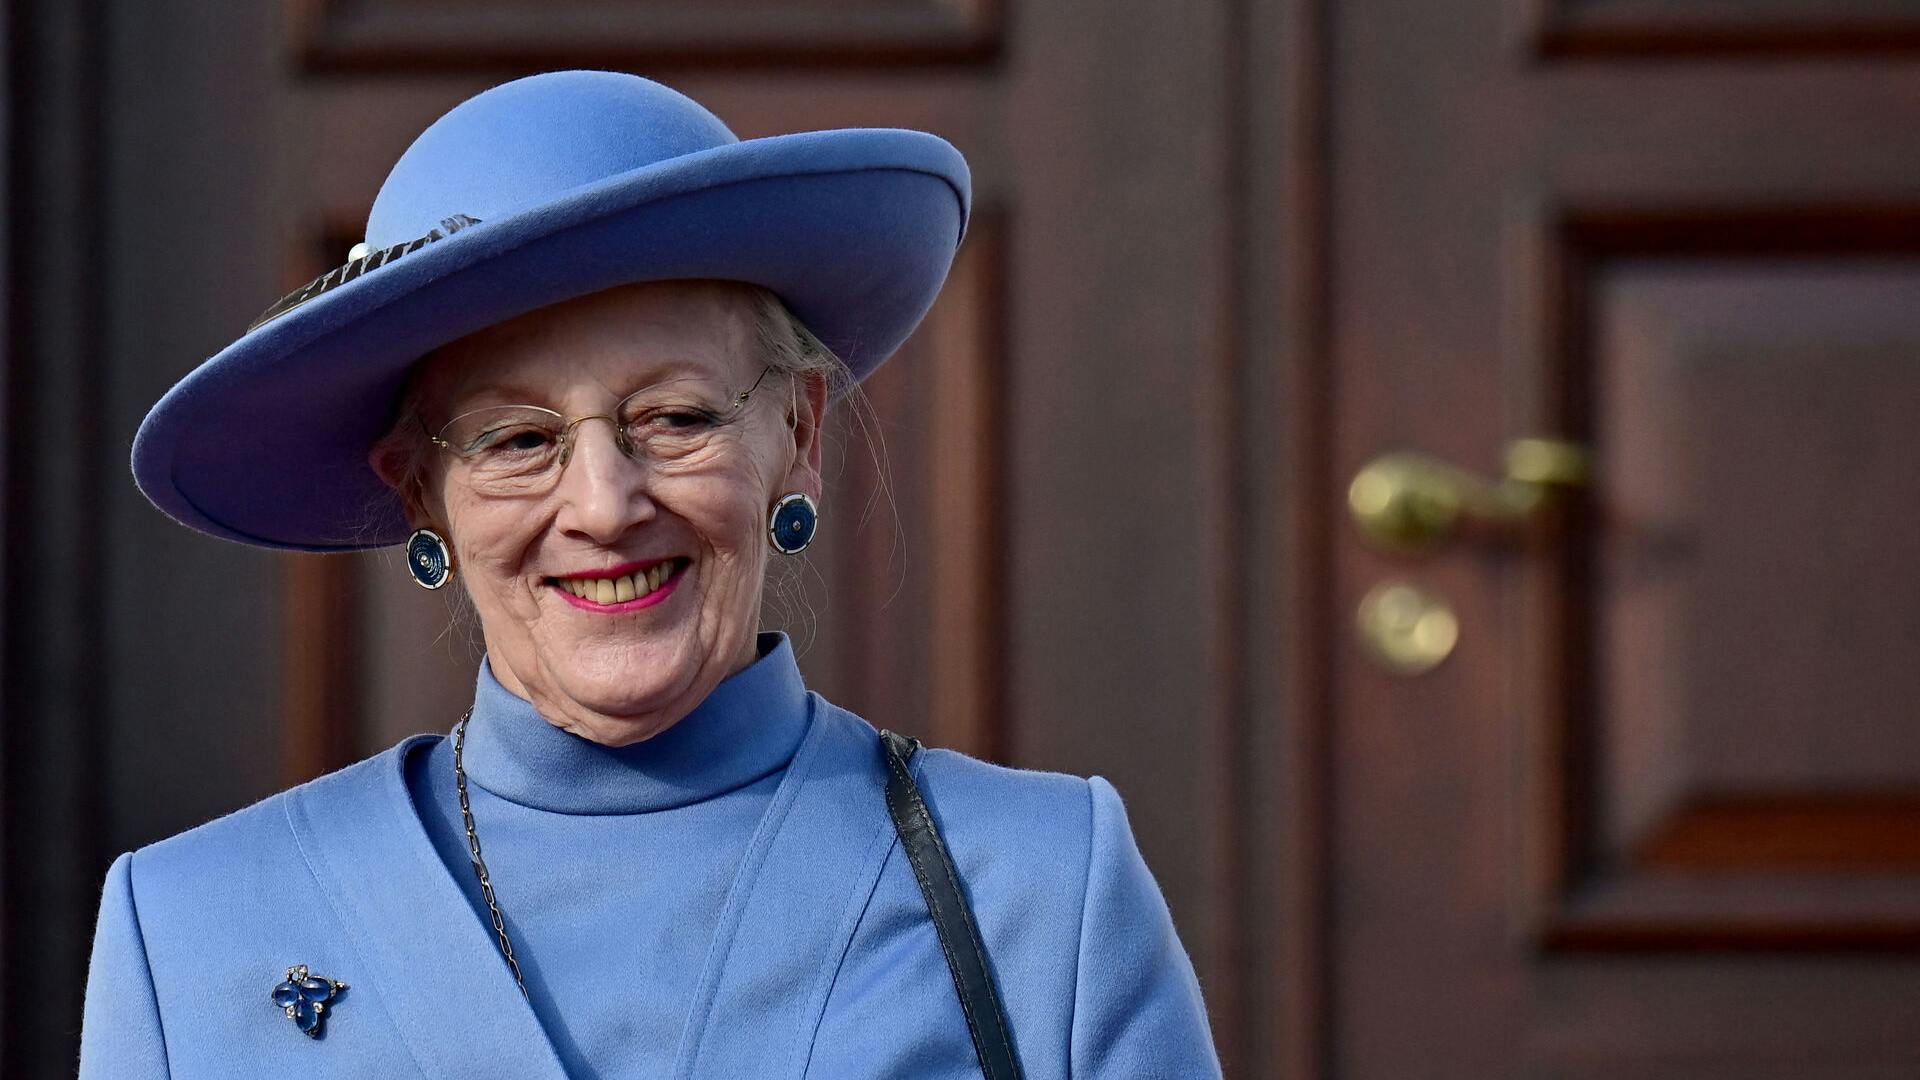 Dronning Margrethe meddelte søndag, at hun har valgt at fratræde tronen.